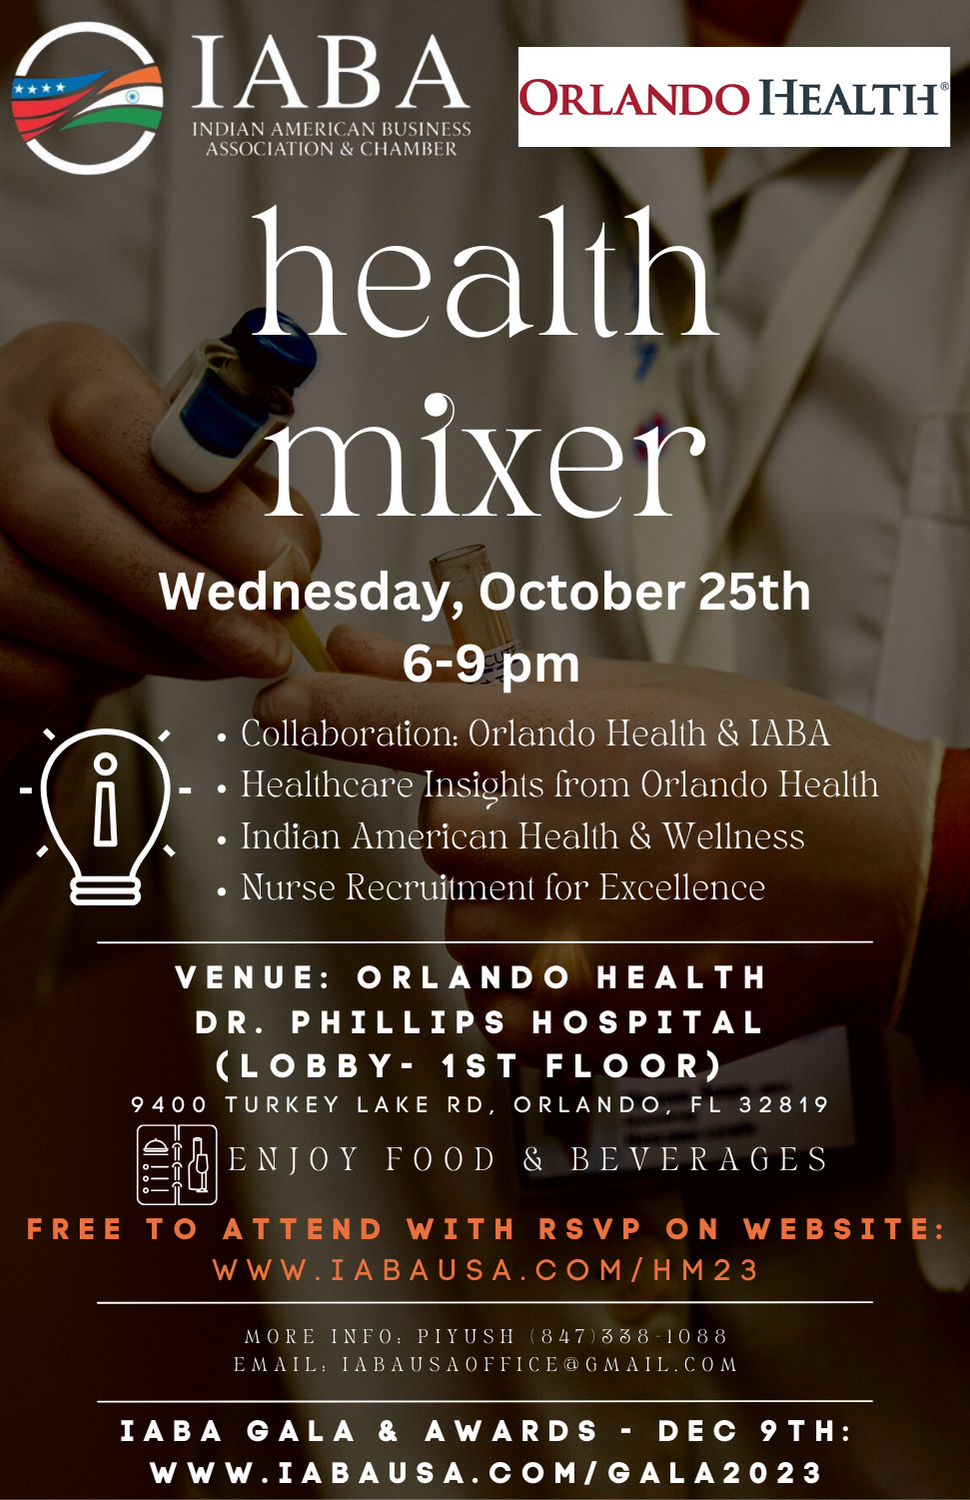 IABA Orlando Health- Health Mixer- Oct 25th